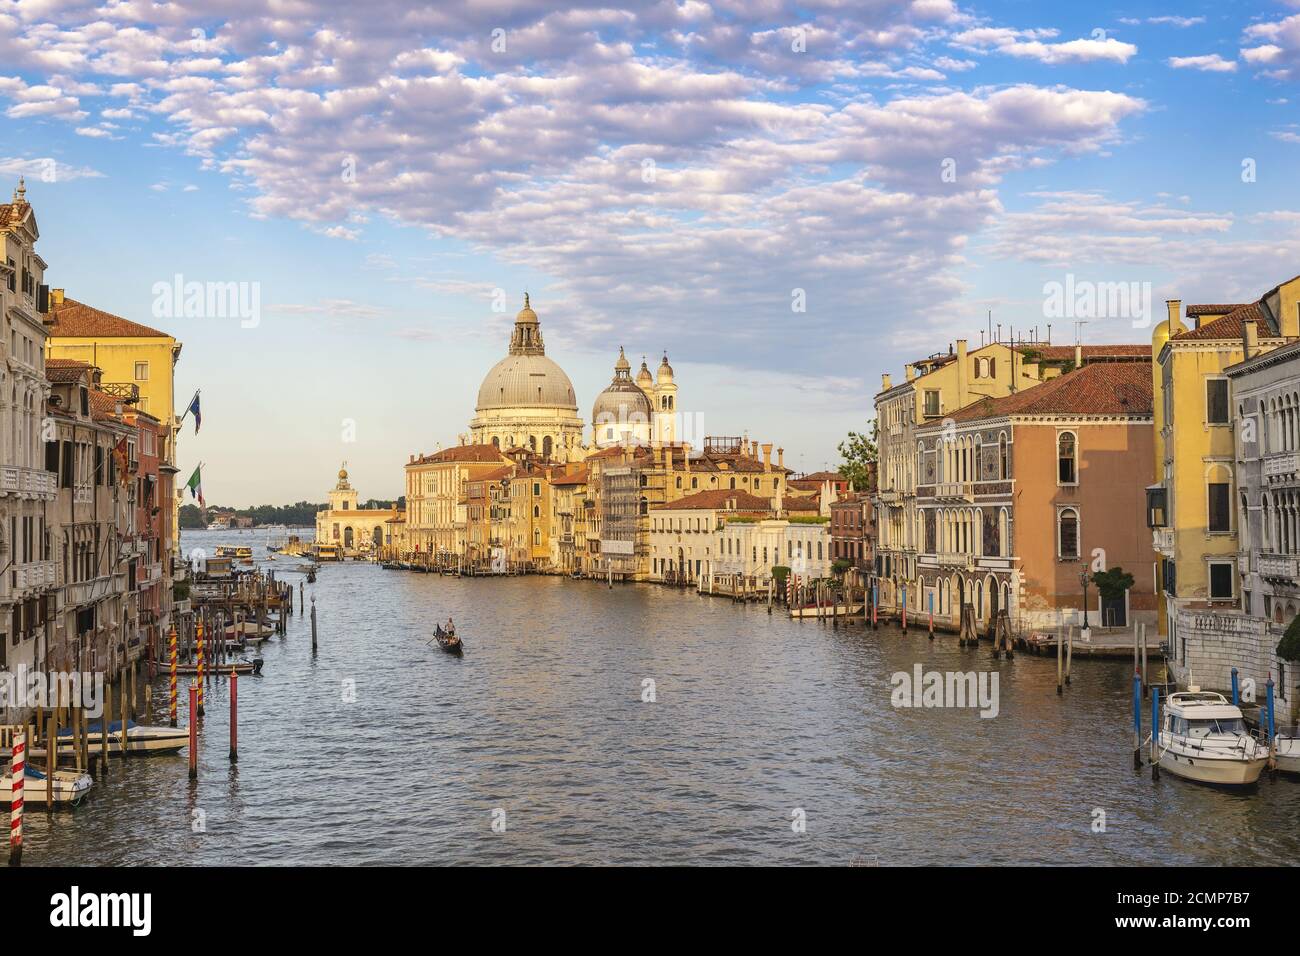 Venice Italy, city skyline at Grand Canal and Basilica di Santa Maria della Salute Stock Photo